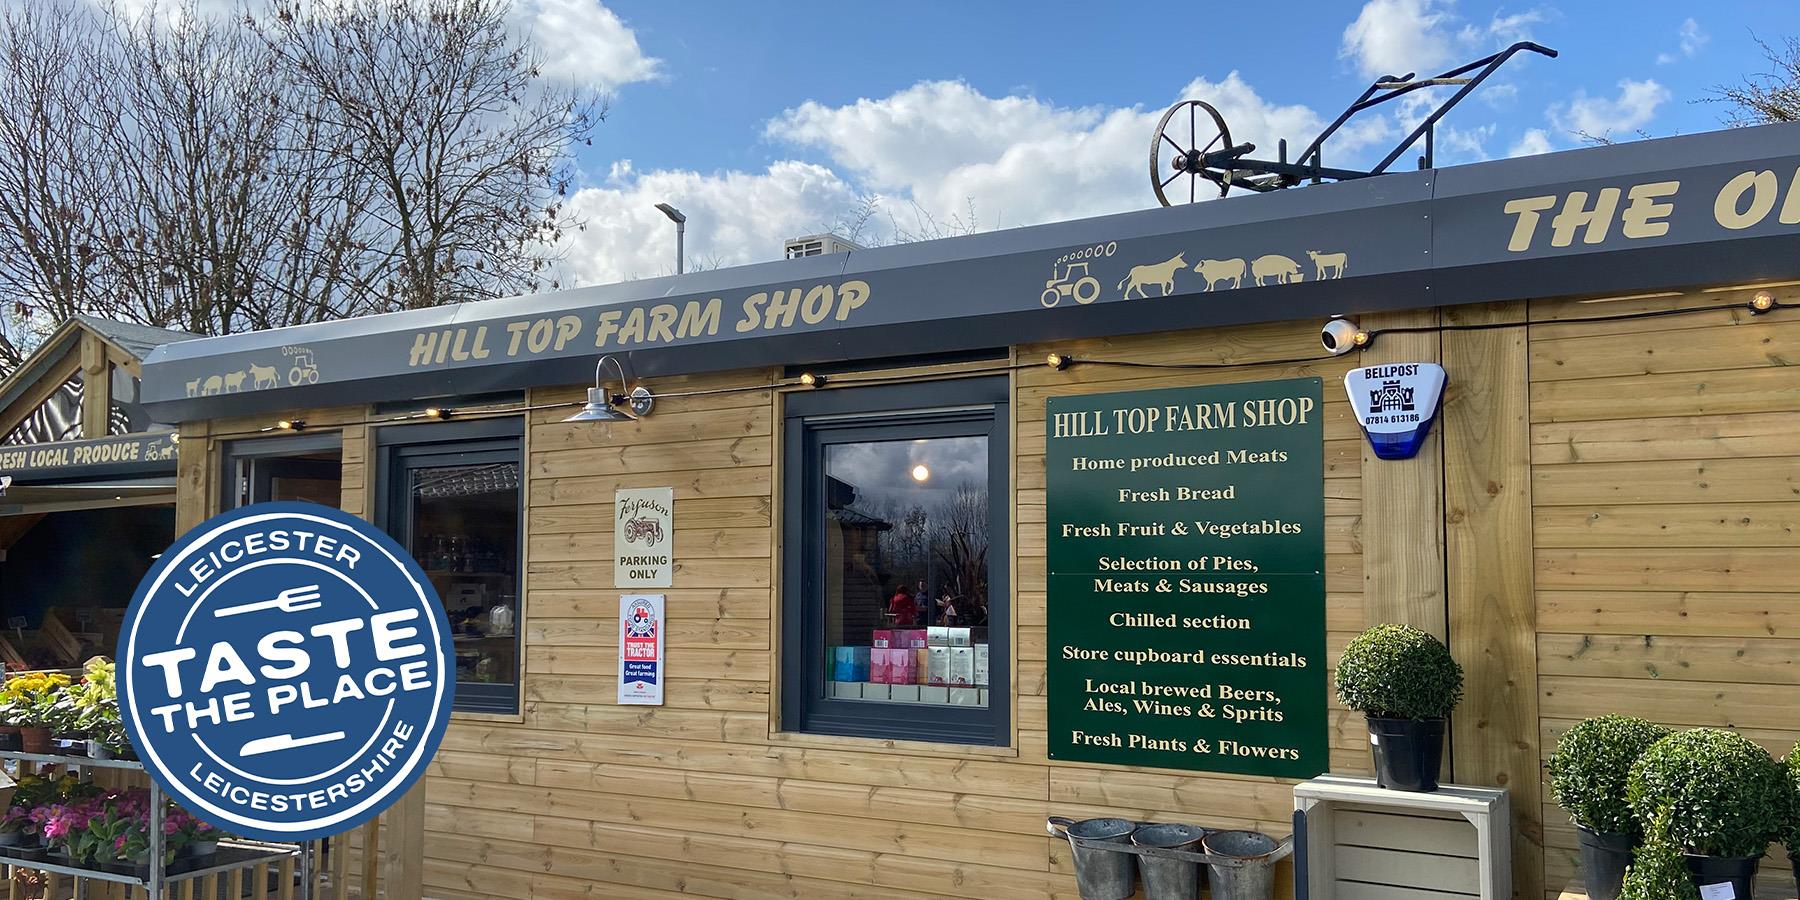 Hill Top Farm Shop
